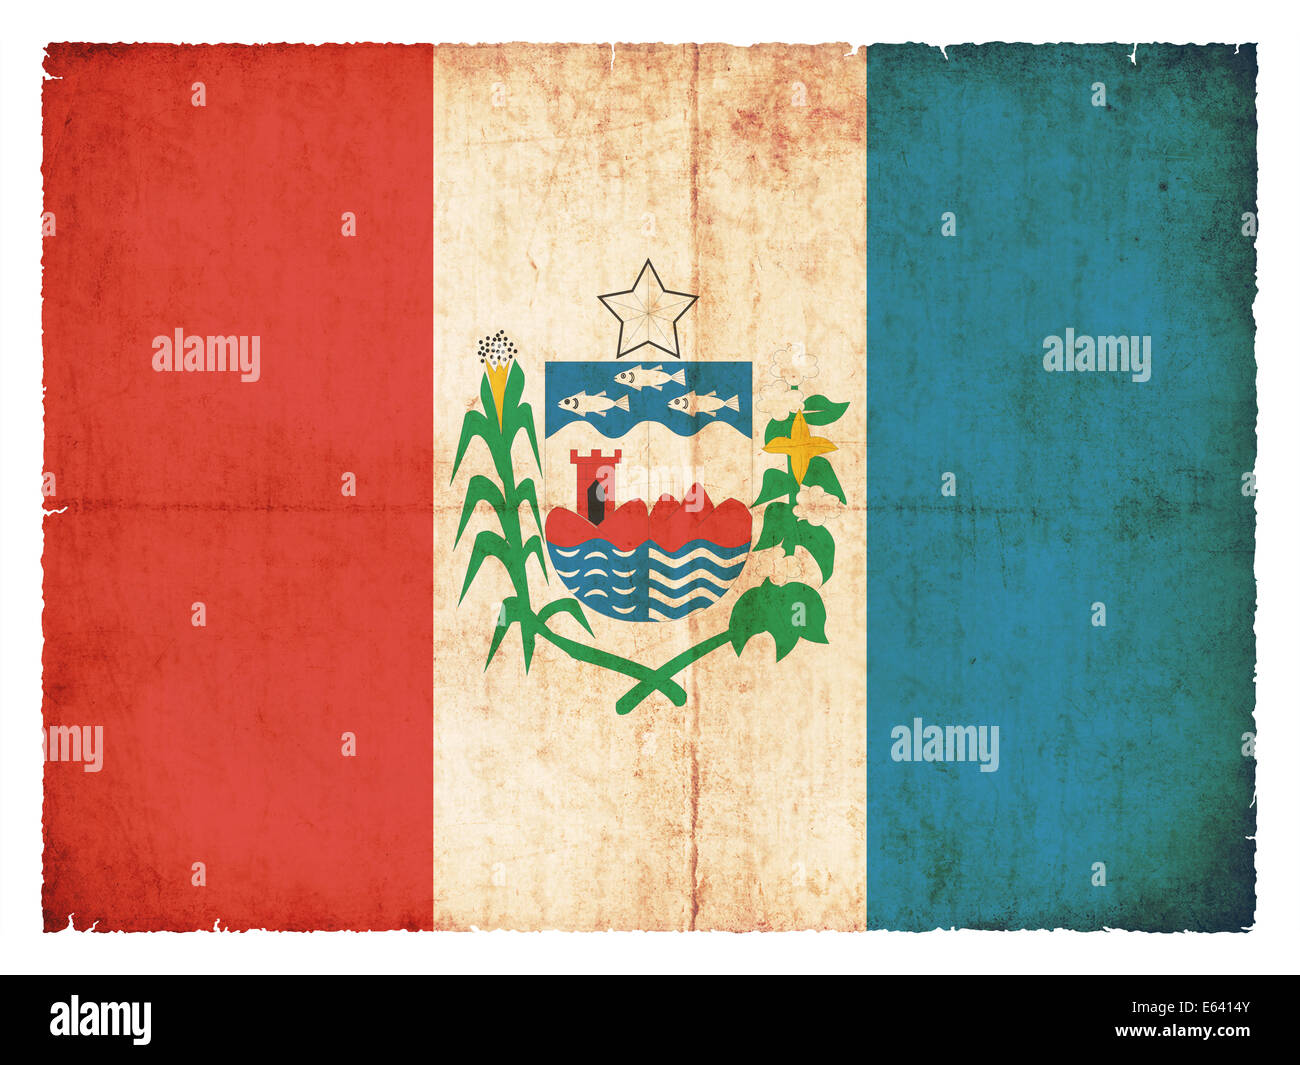 Flagge des brasilianischen Bundesstaates Alagoas im Grunge-Stil erstellt Stockfoto